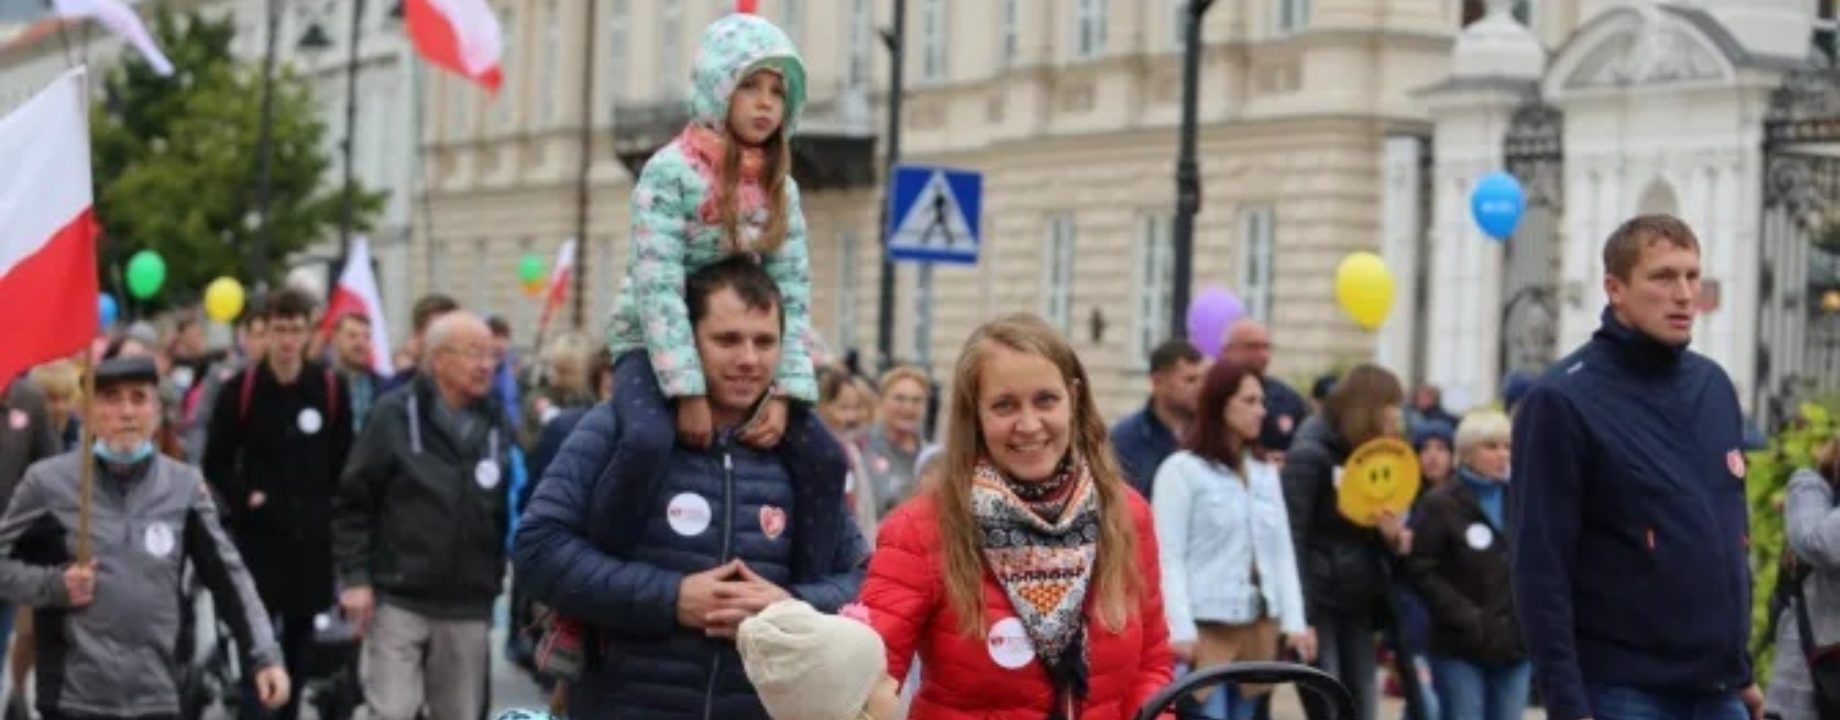 lengyel család életpárti abortuszellenes tüntetés catholic news agency